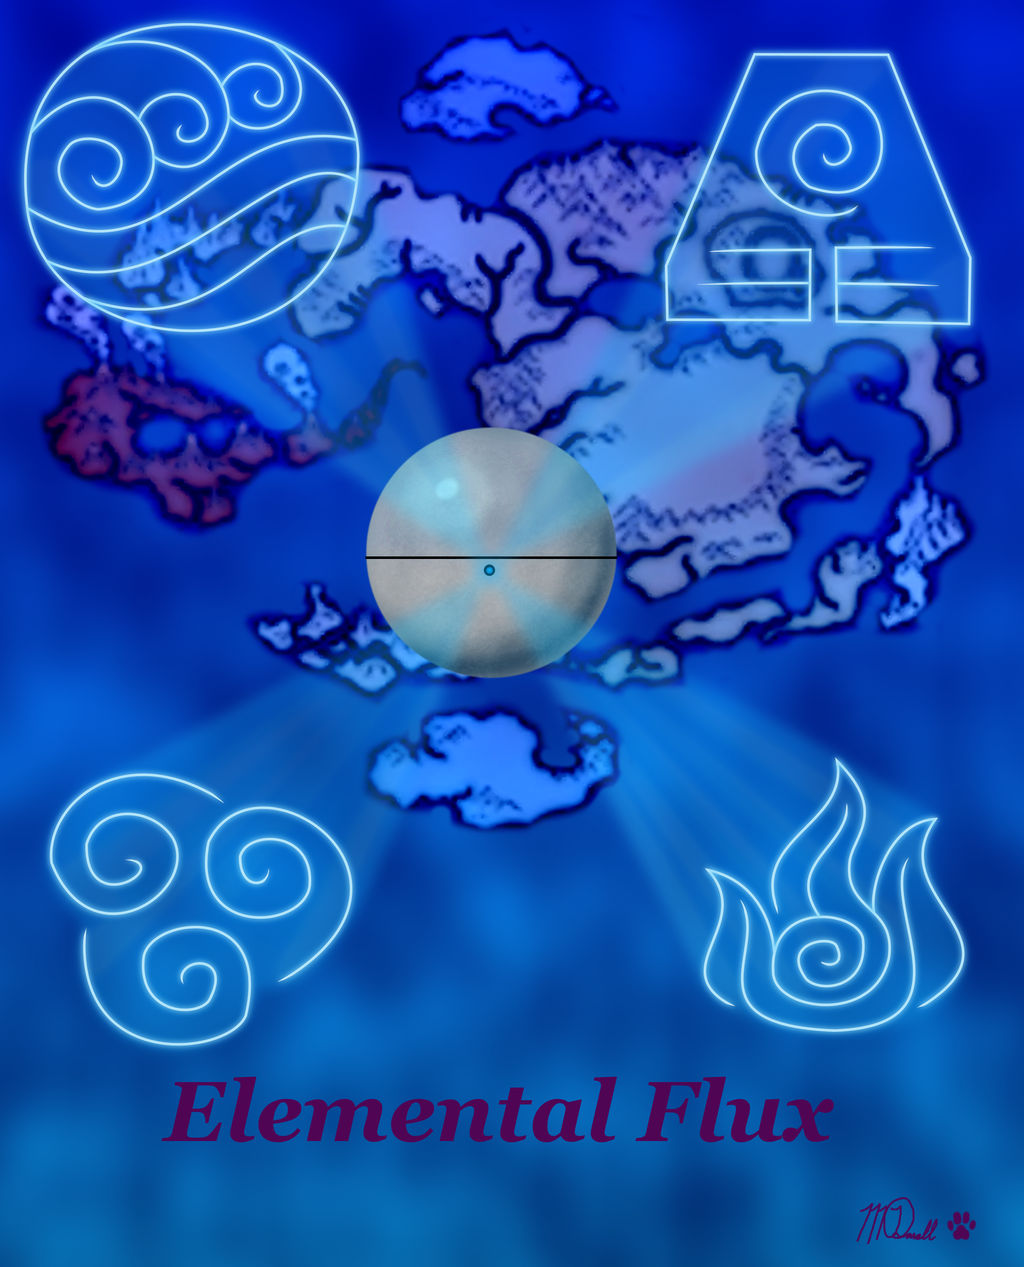 Elemental Flux Cover by BluTaiger on DeviantArt